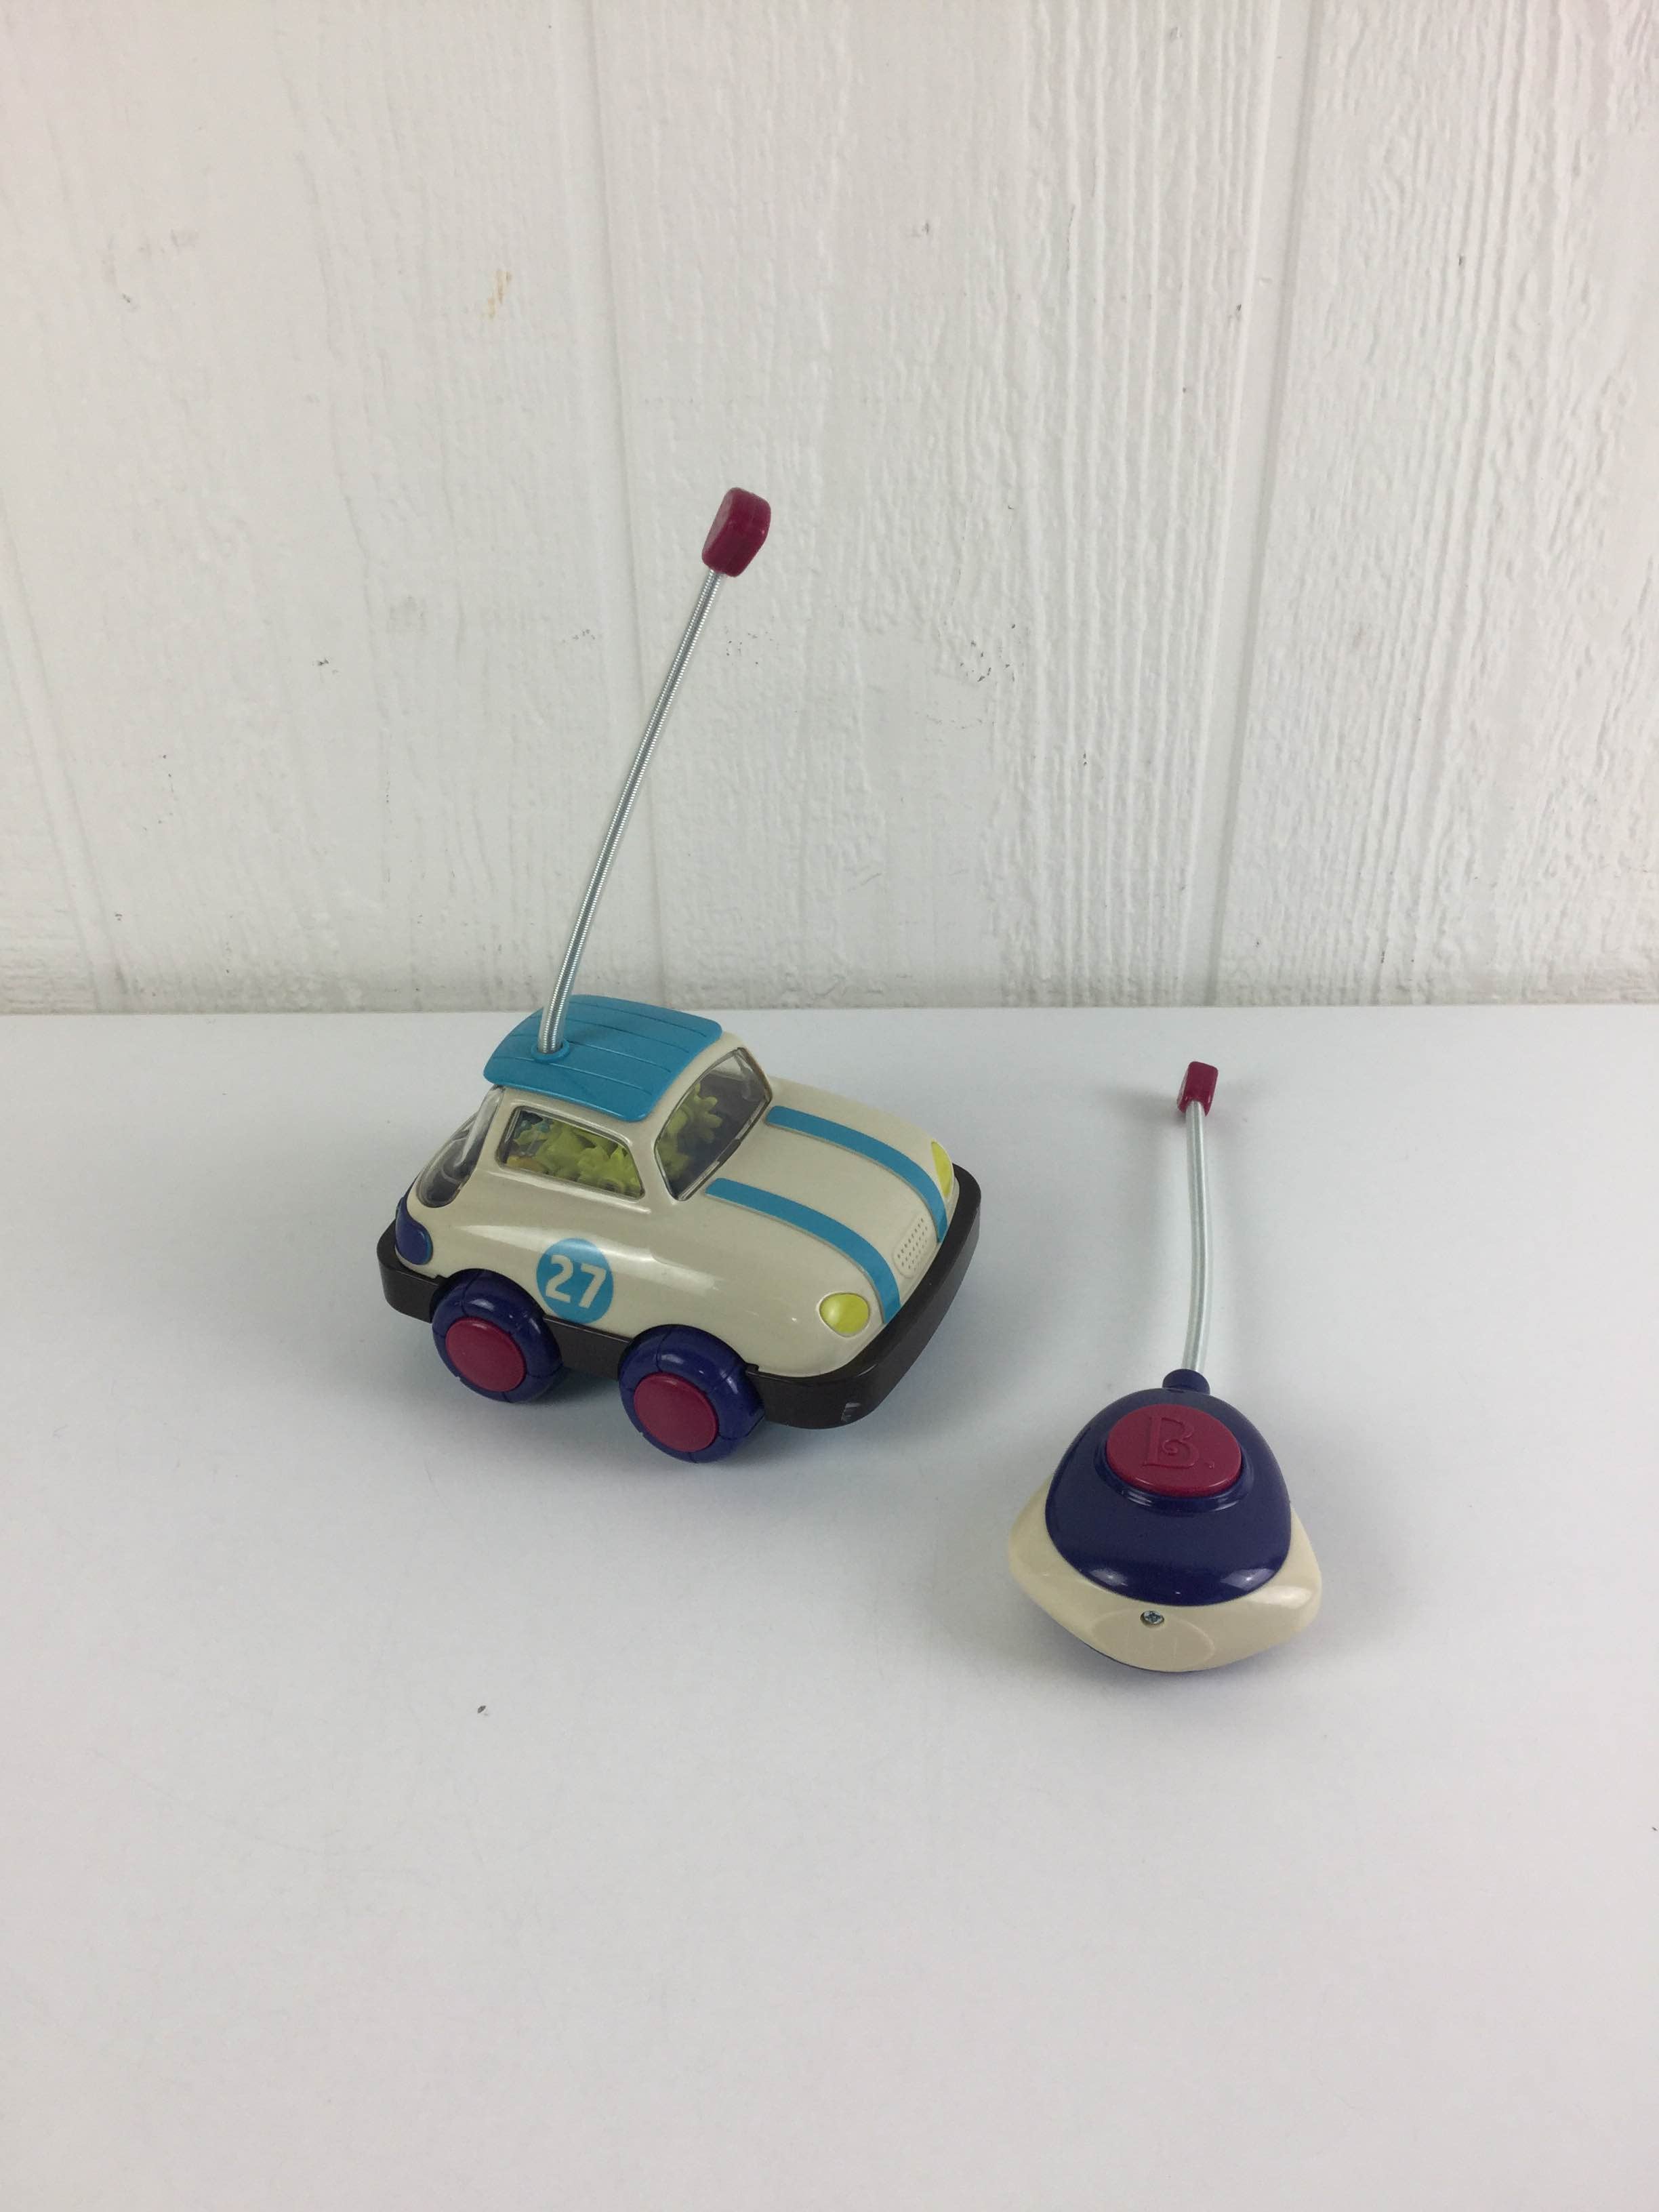 b toys remote control car